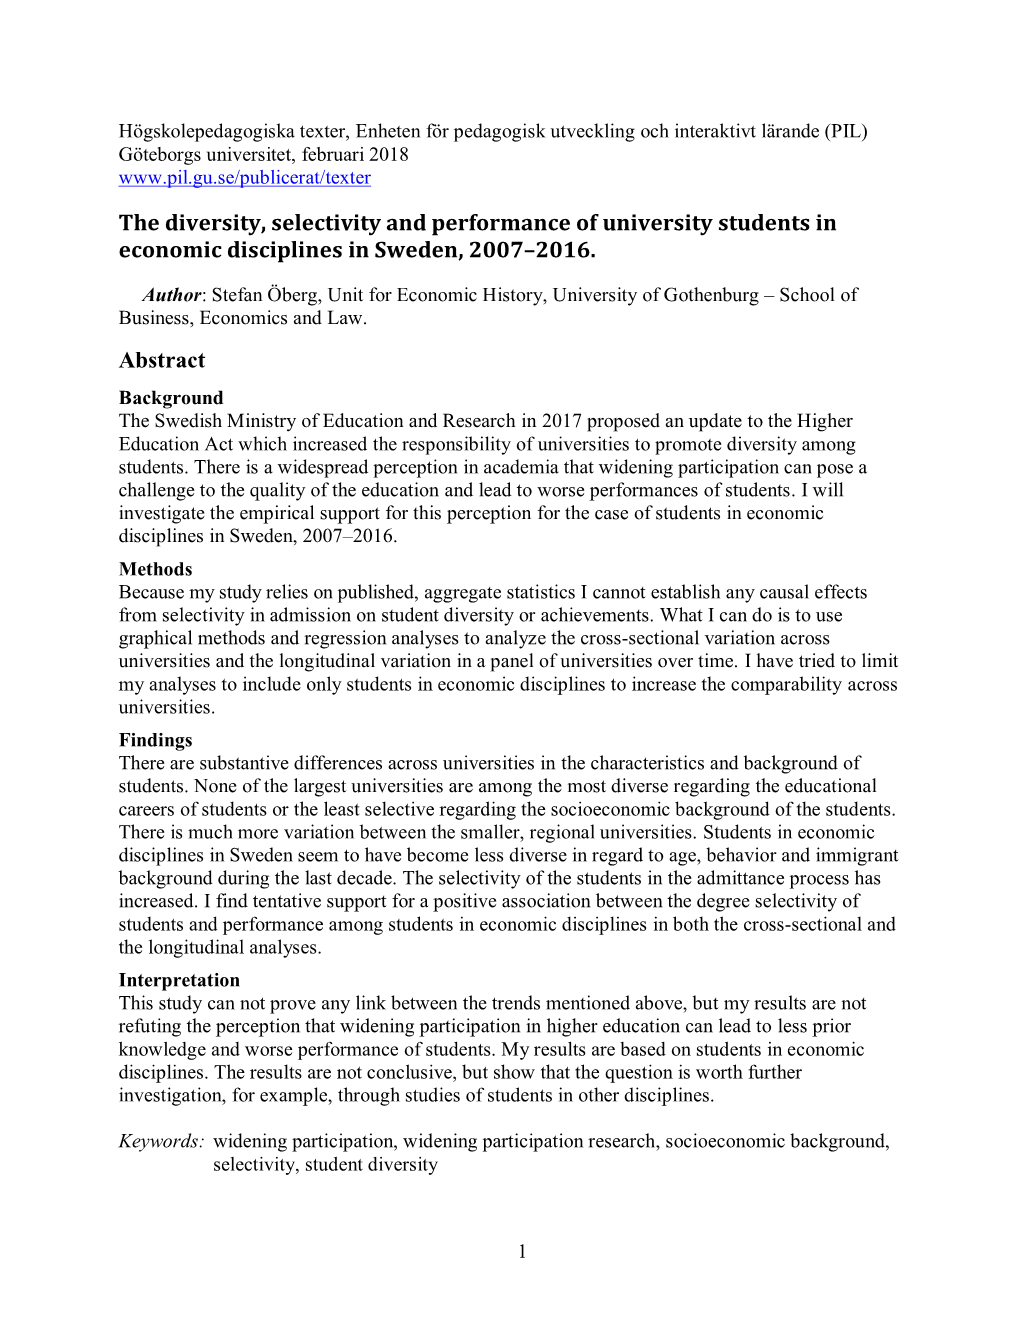 Öberg, Stefan. the Diversity, Selectivity and Performance of University